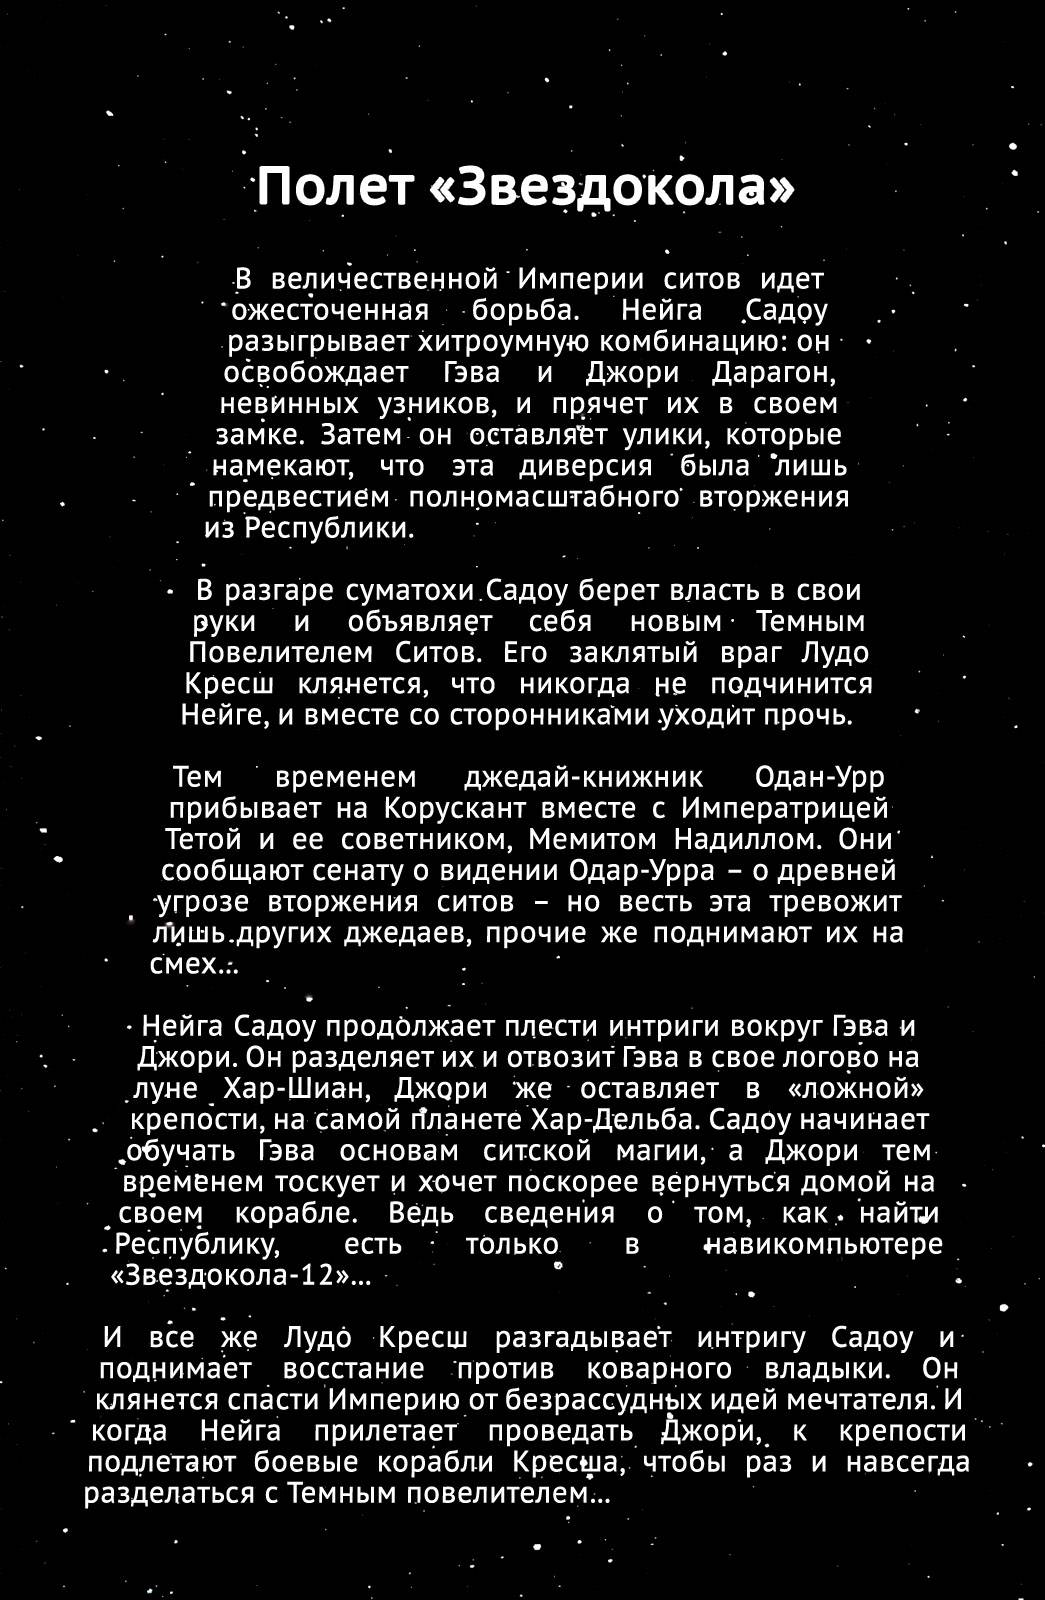 Звездные Войны: Сказания о Джедаях: Золотой Век Ситов №5 онлайн